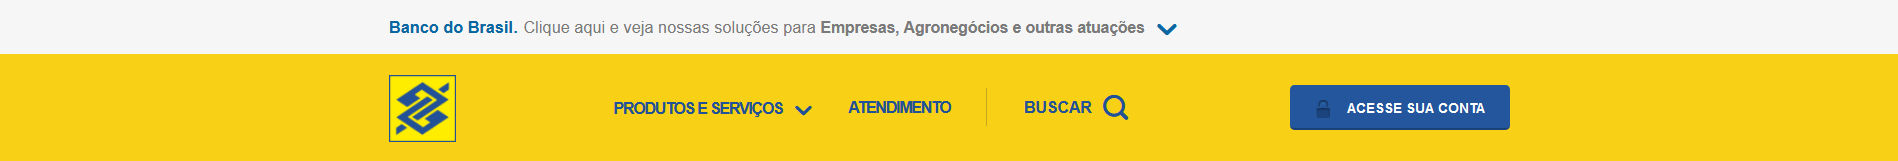 Cabeçalho do site do Banco do Brasil em 3 de fevereiro de 2020